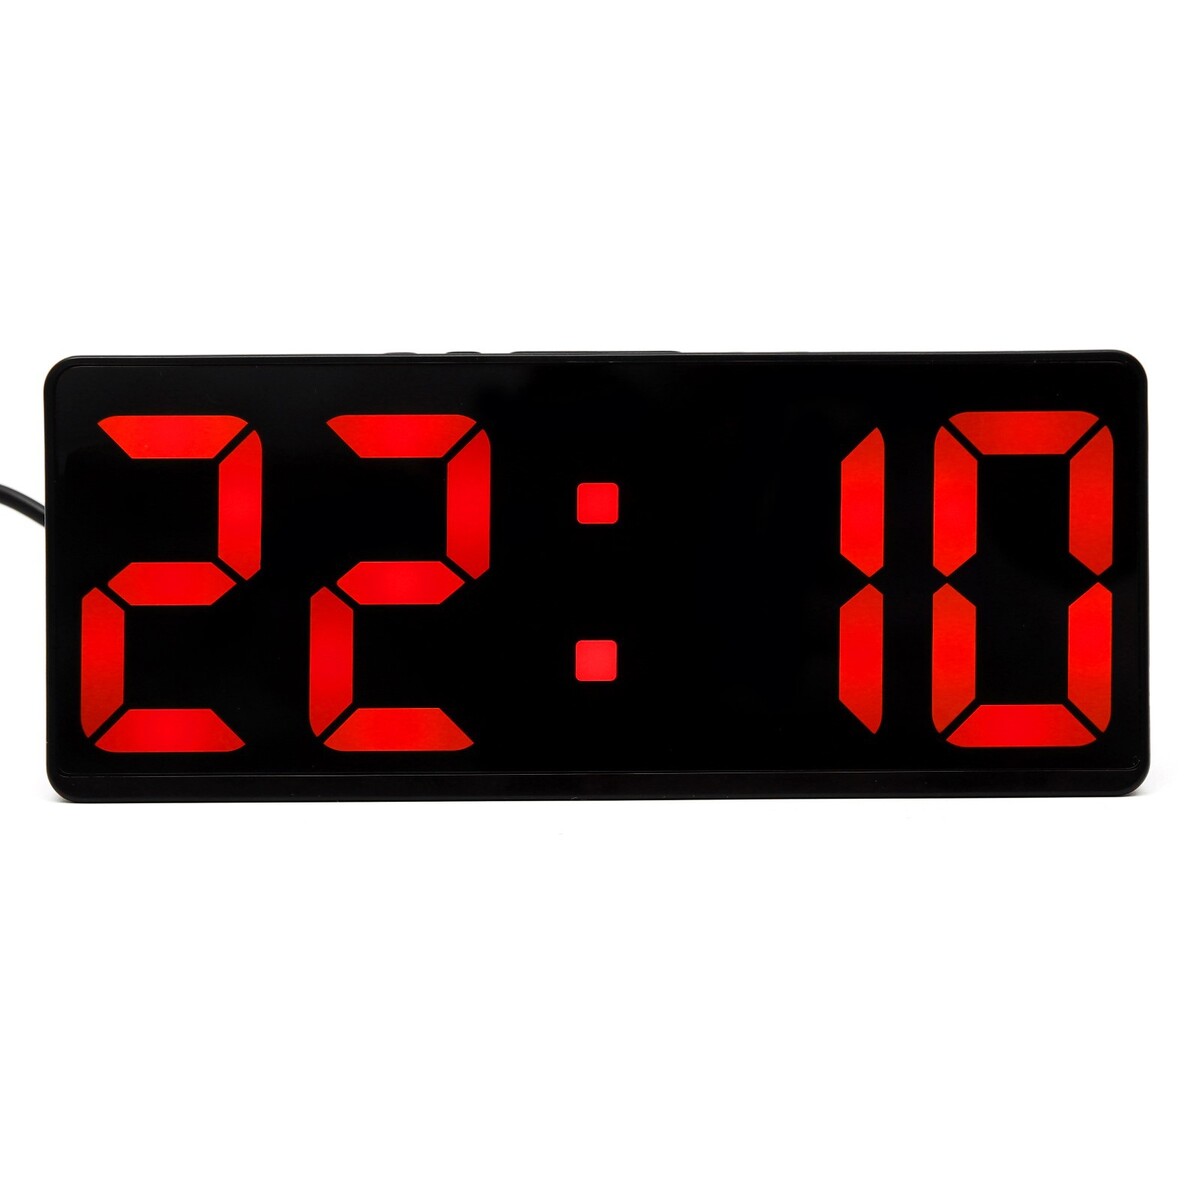 фото Часы настольные электронные: будильник, термометр, календарь, usb, 15х6.3 см, красные цифры no brand